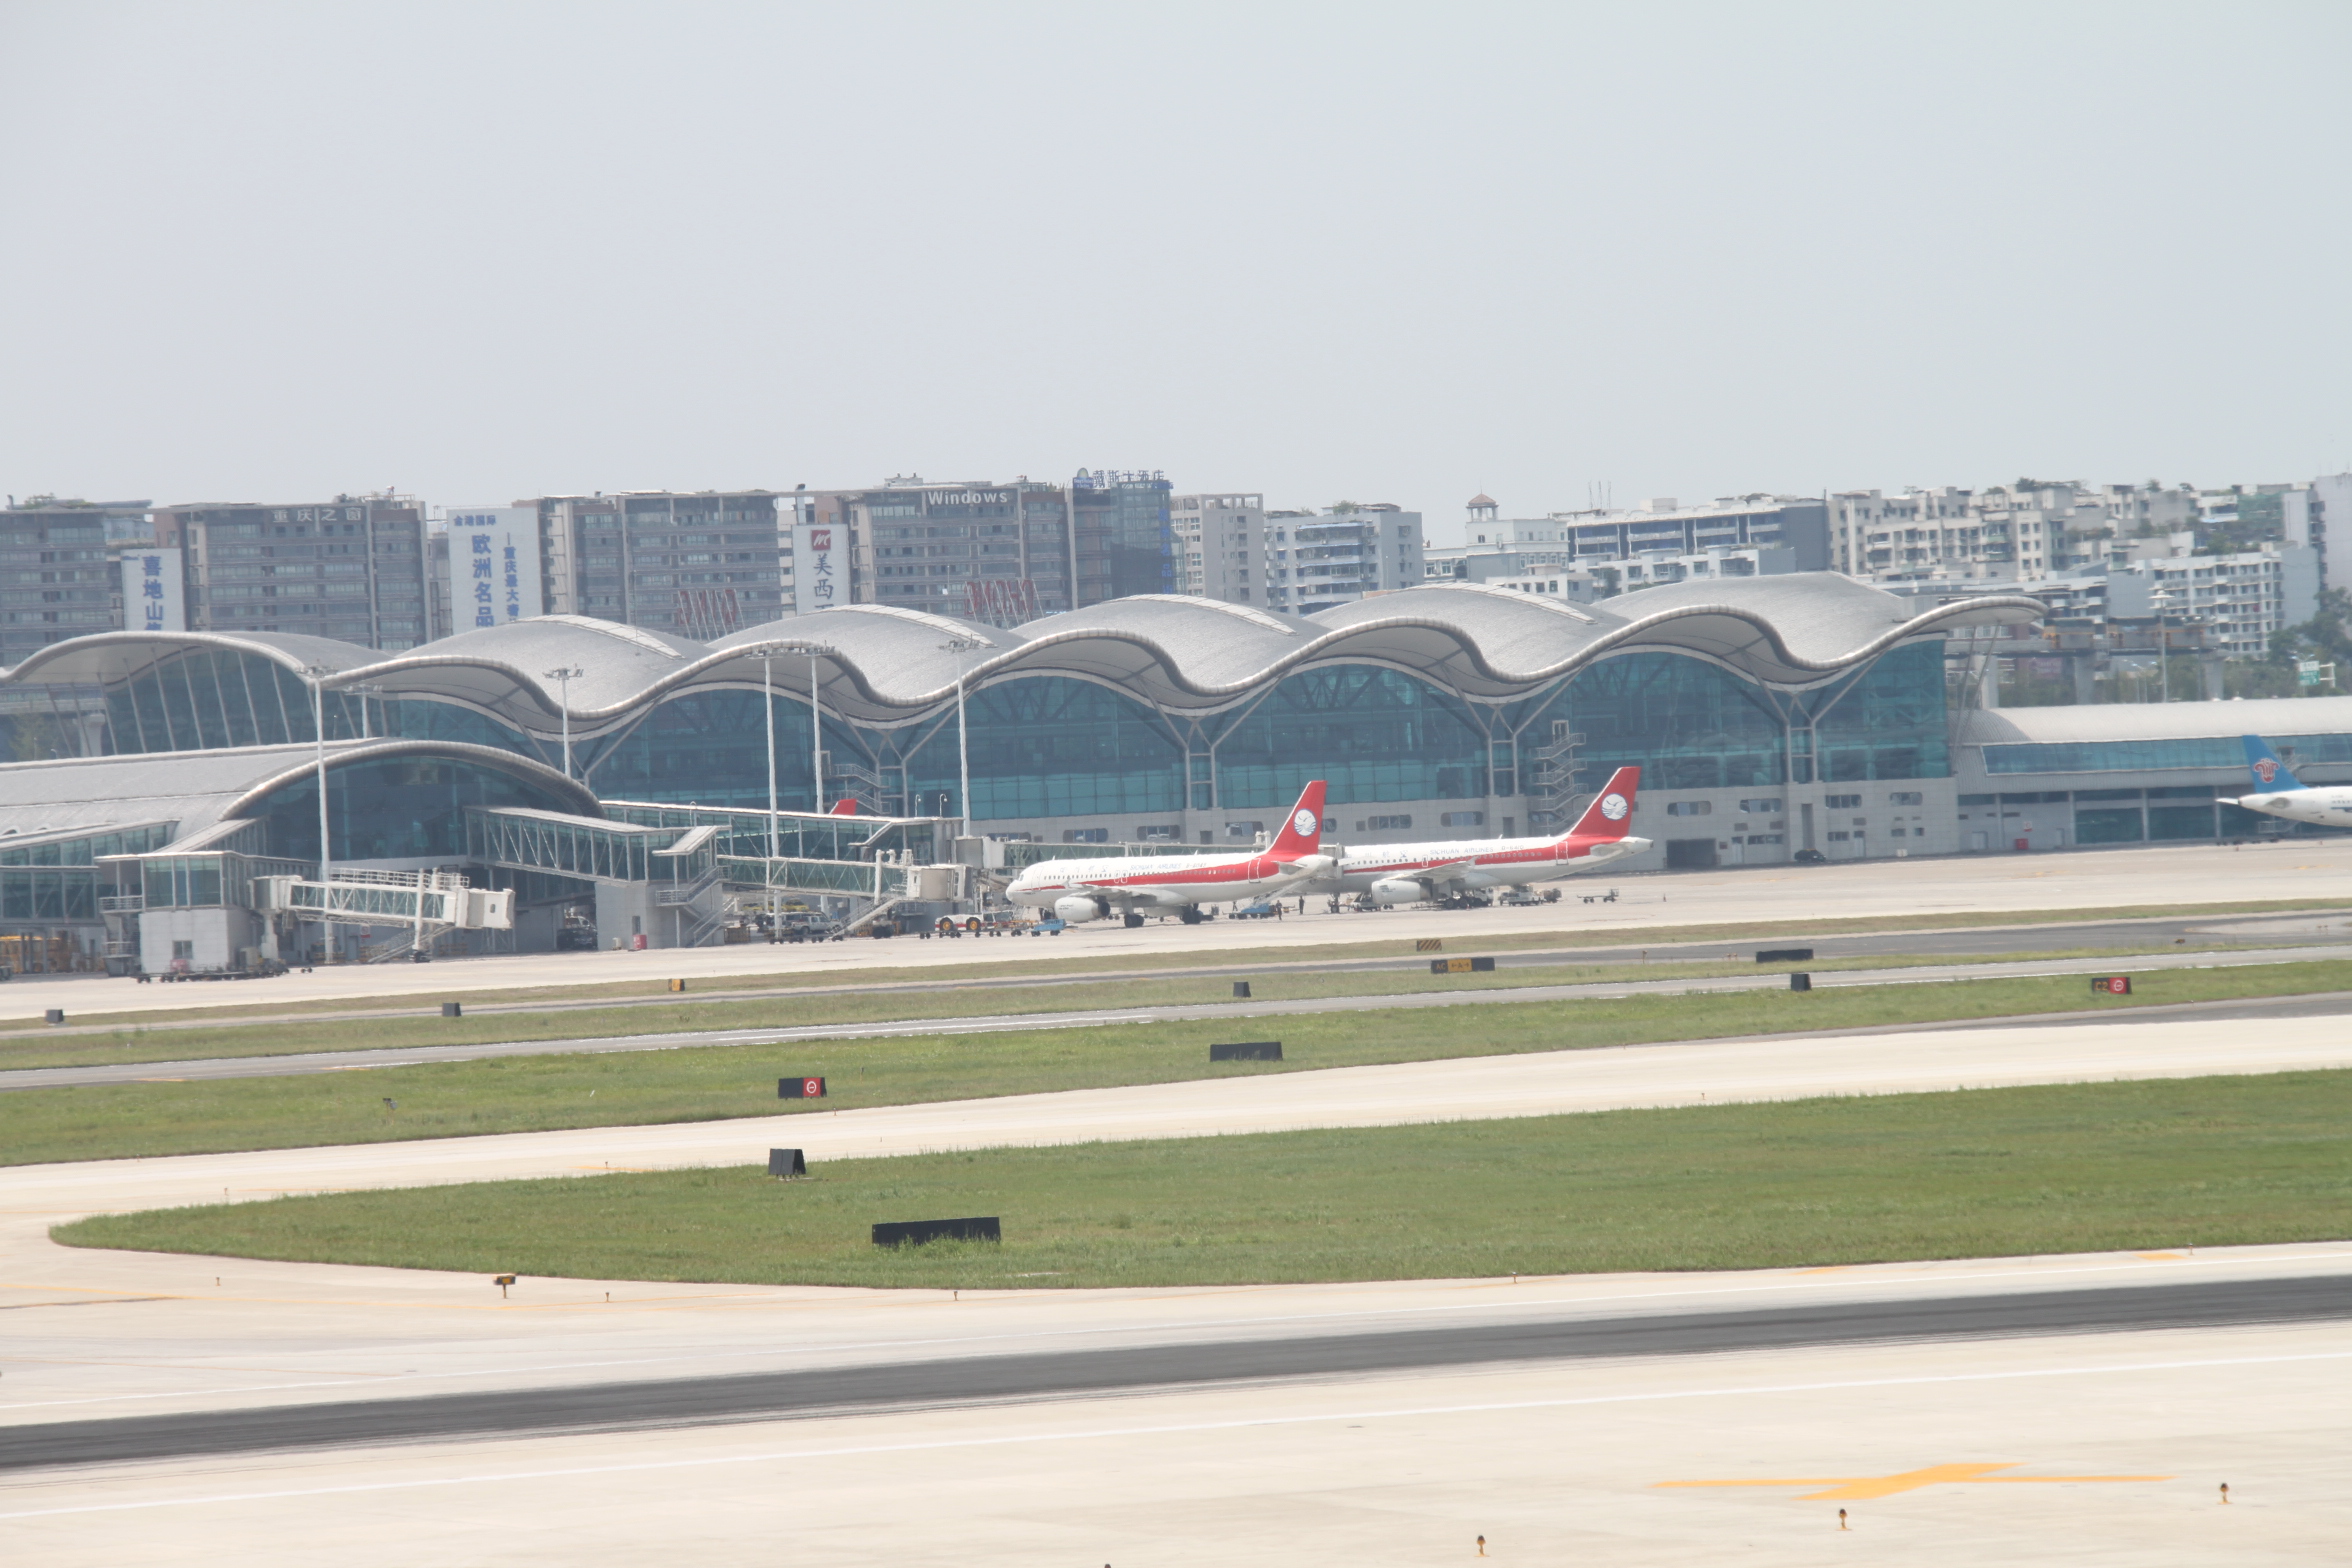 详细位置:江北机场航站楼对面推荐理由:飞机跑道旁的亲密行为,飞机从